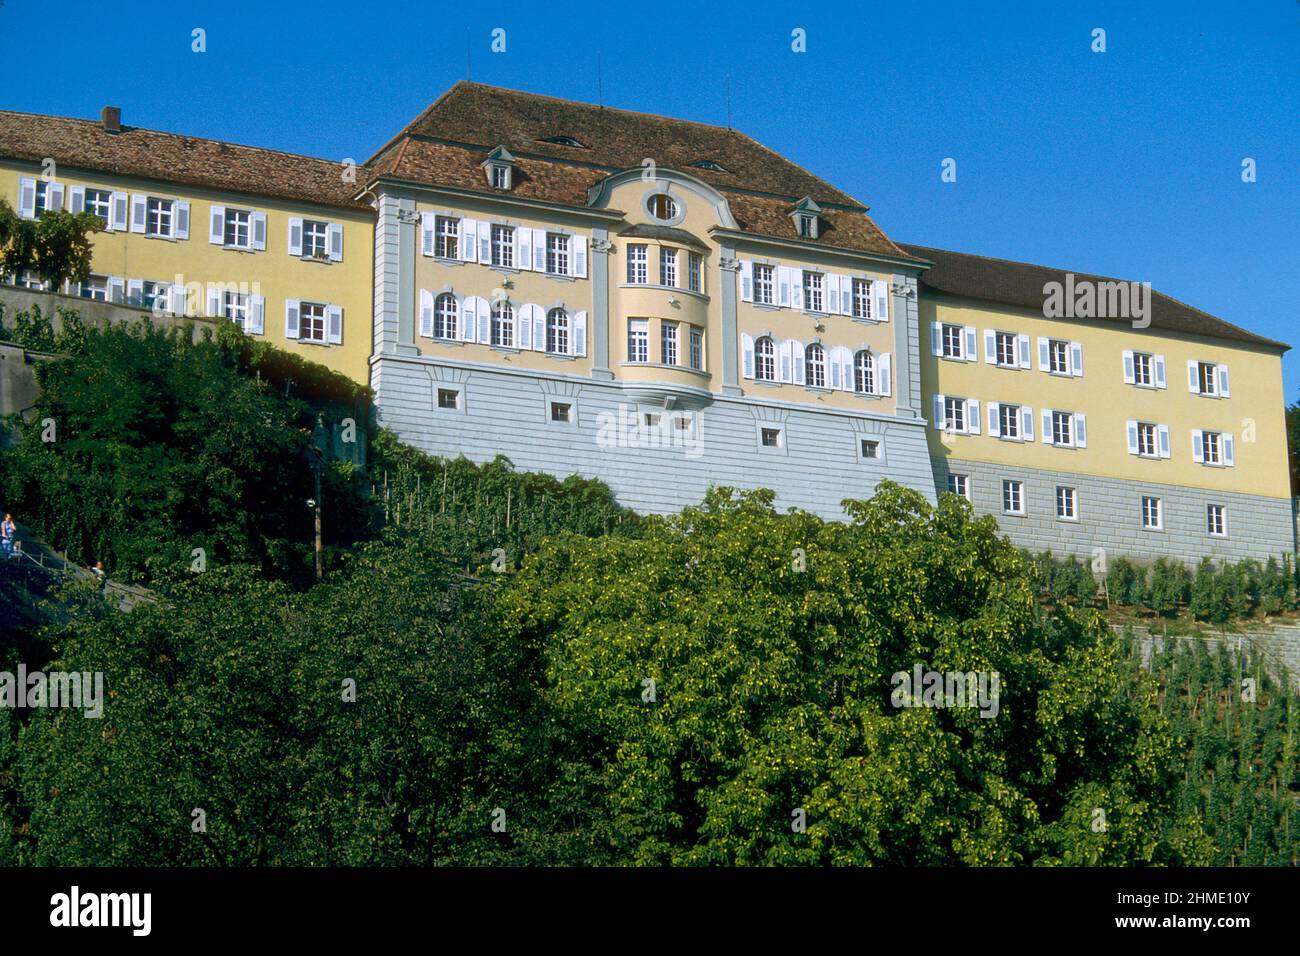 State Winery building in 1981, Meersburg, Baden-Württemberg, Germany Stock Photo